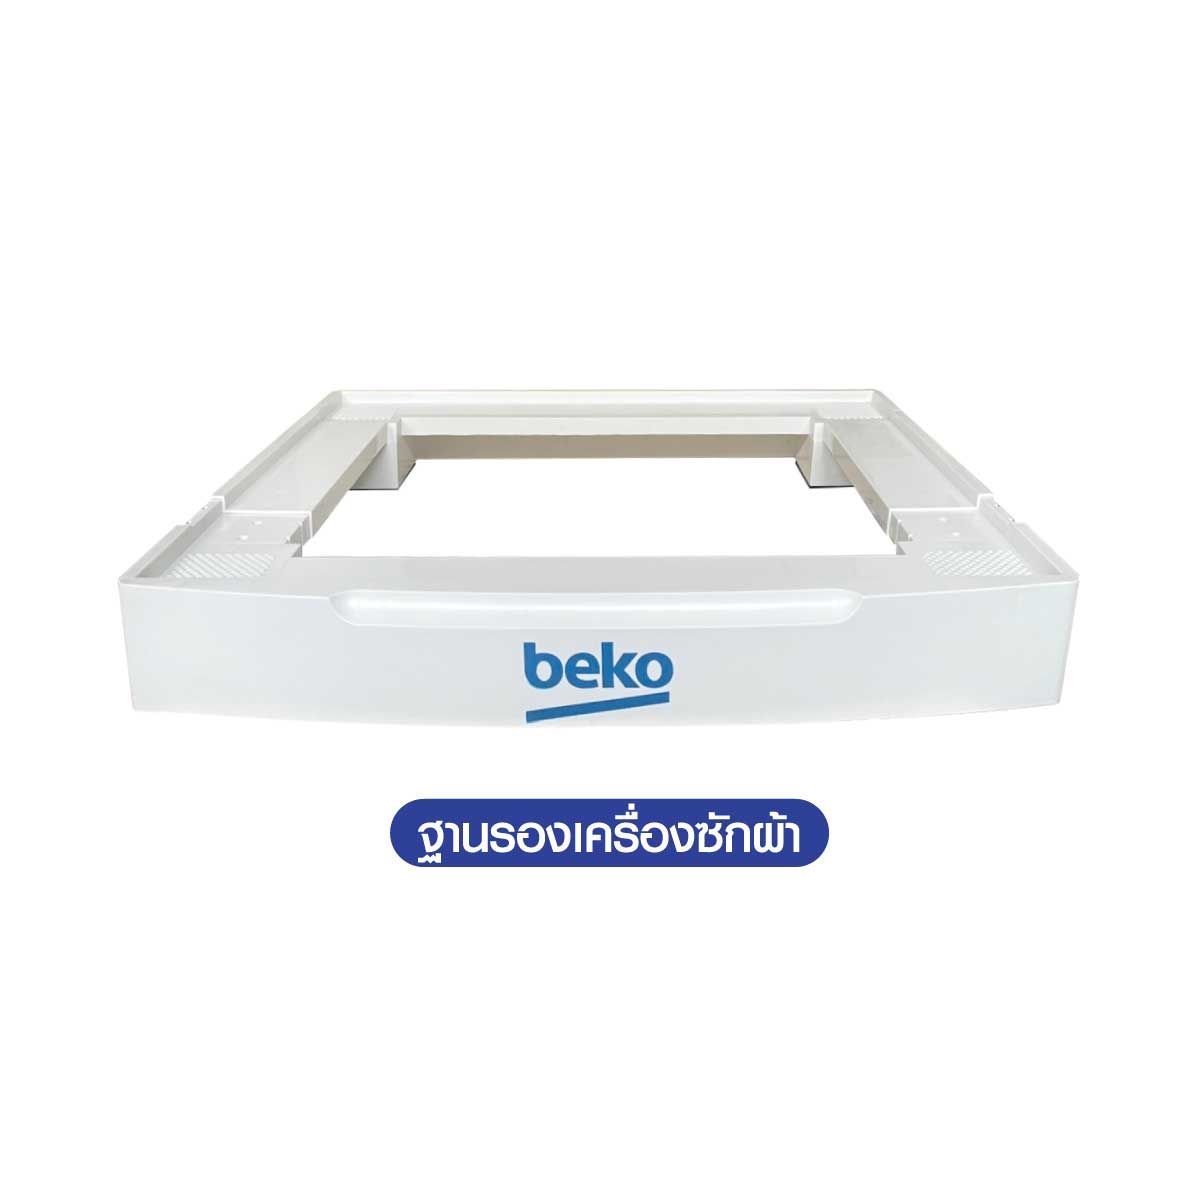 BEKO เครื่องซักผ้าฝาหน้า 10.5kg 16โปรแกรม AquaTech+SteamCure  สีขาว รุ่น WTE10744X0STN